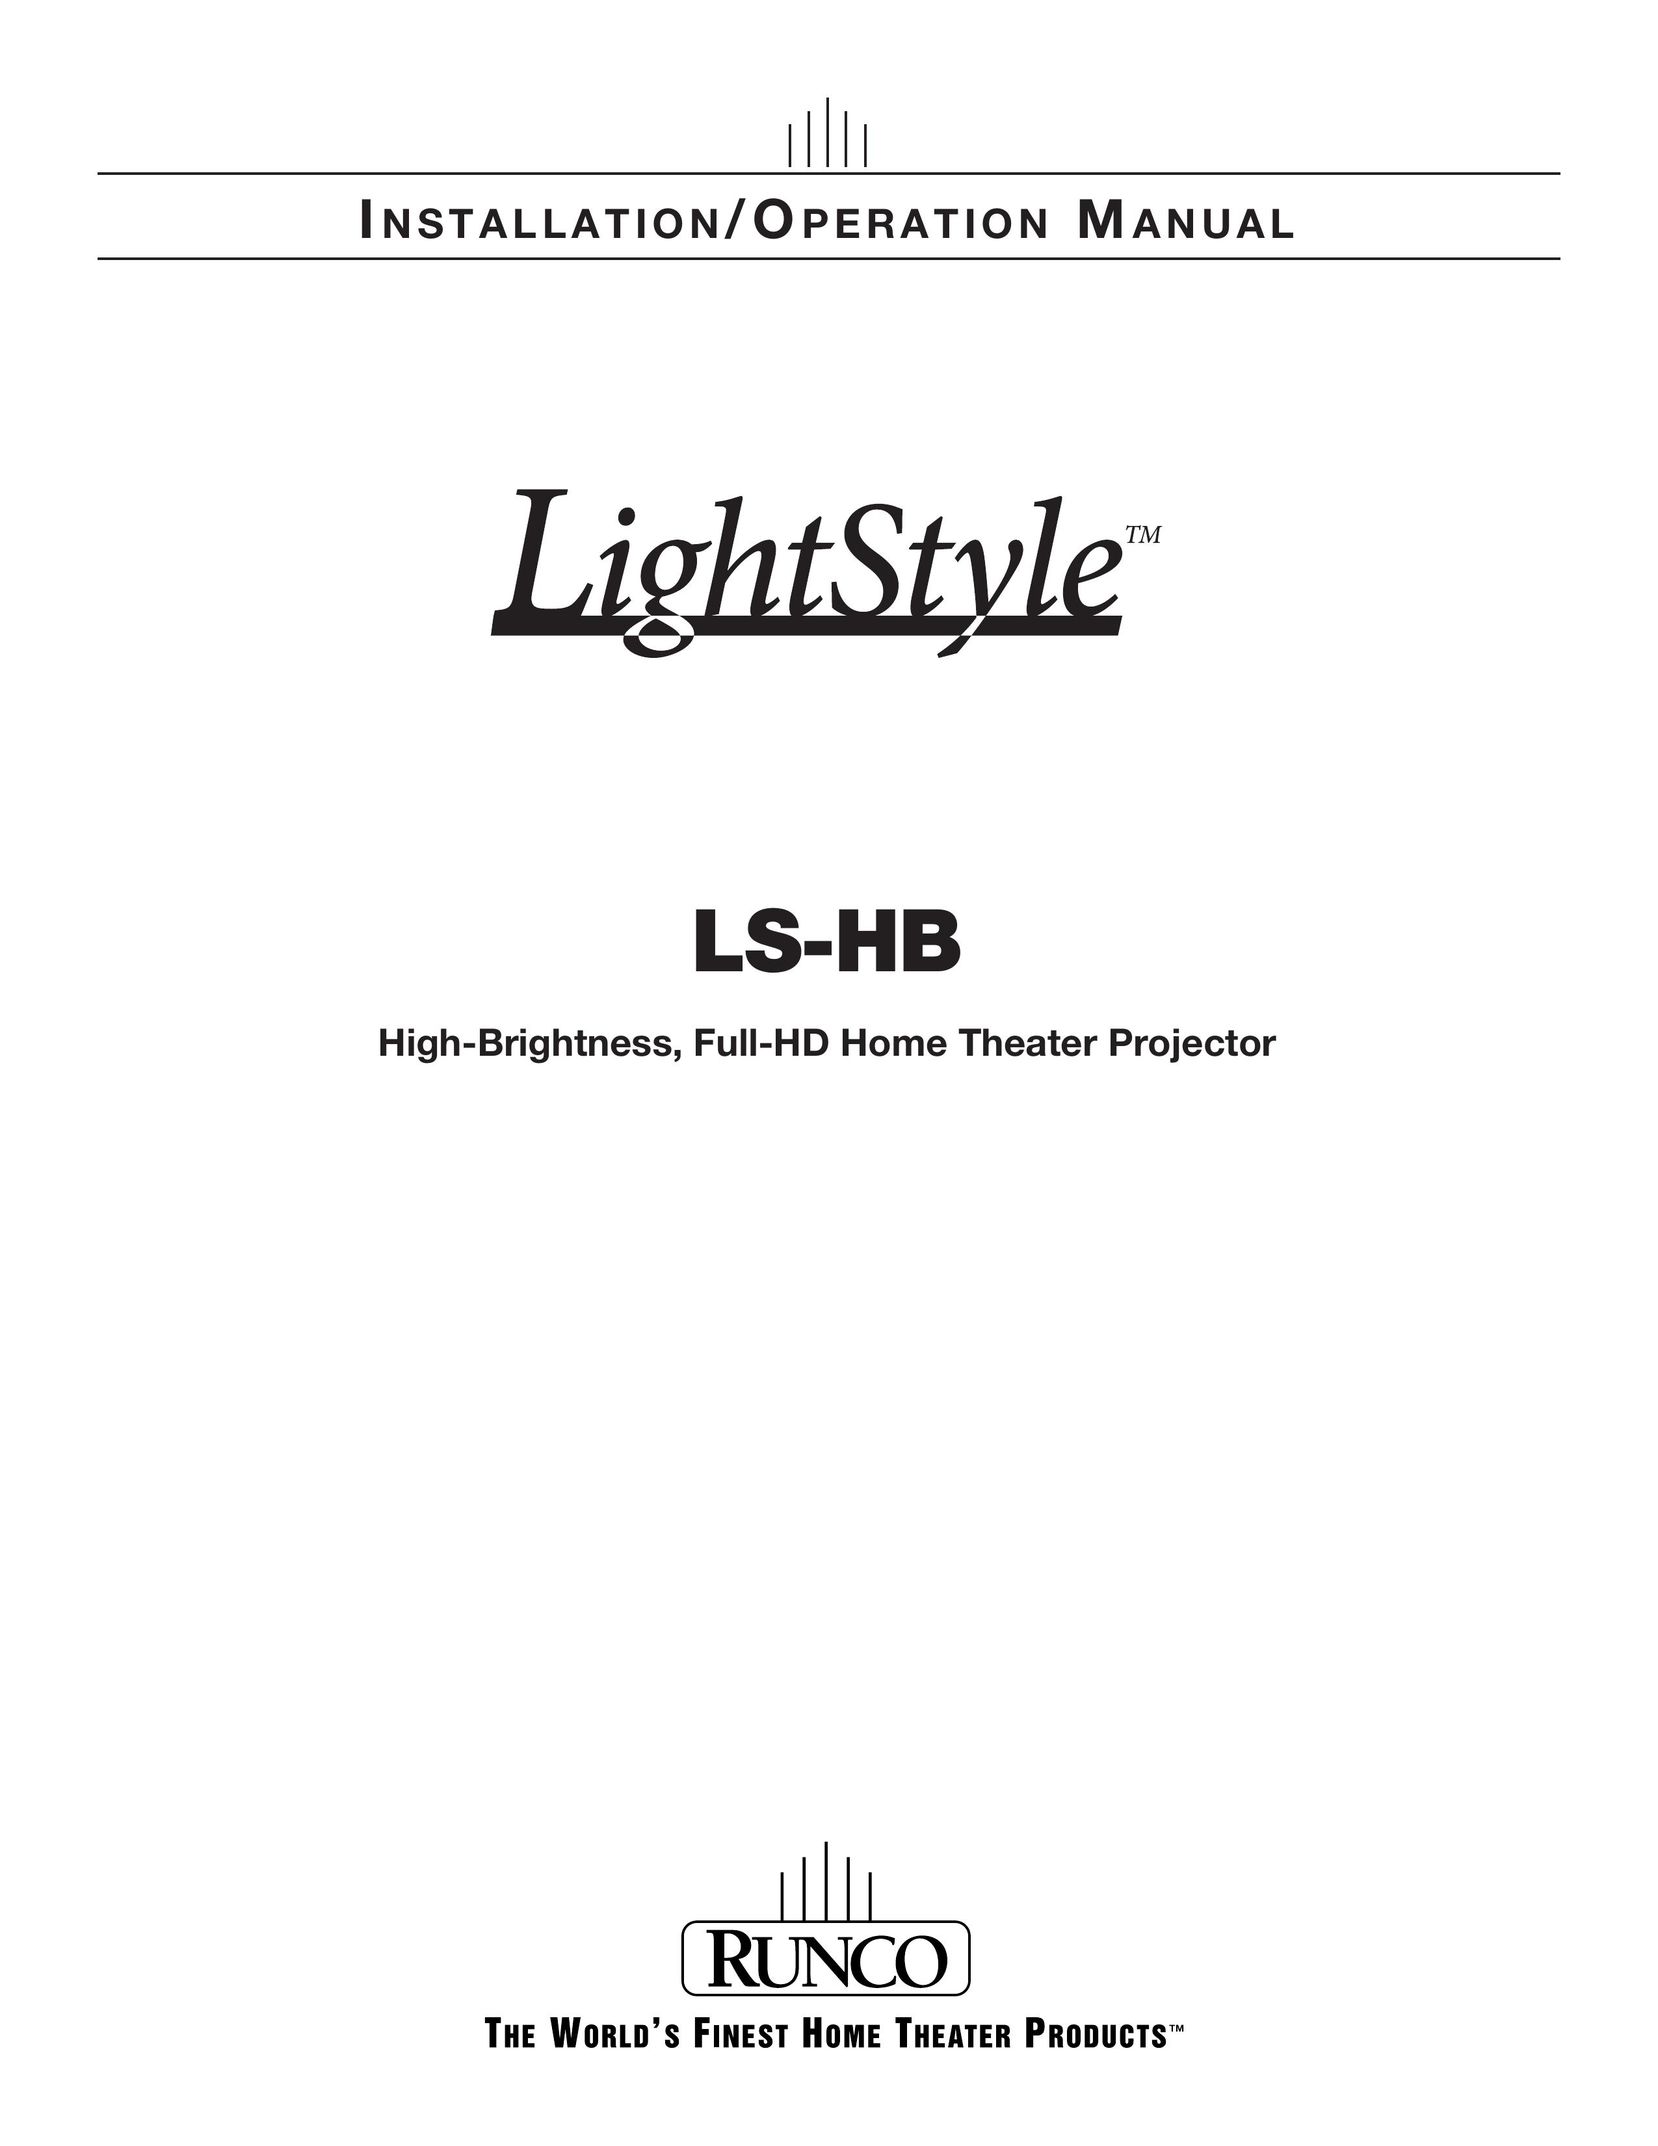 Runco LS-HB Projector User Manual